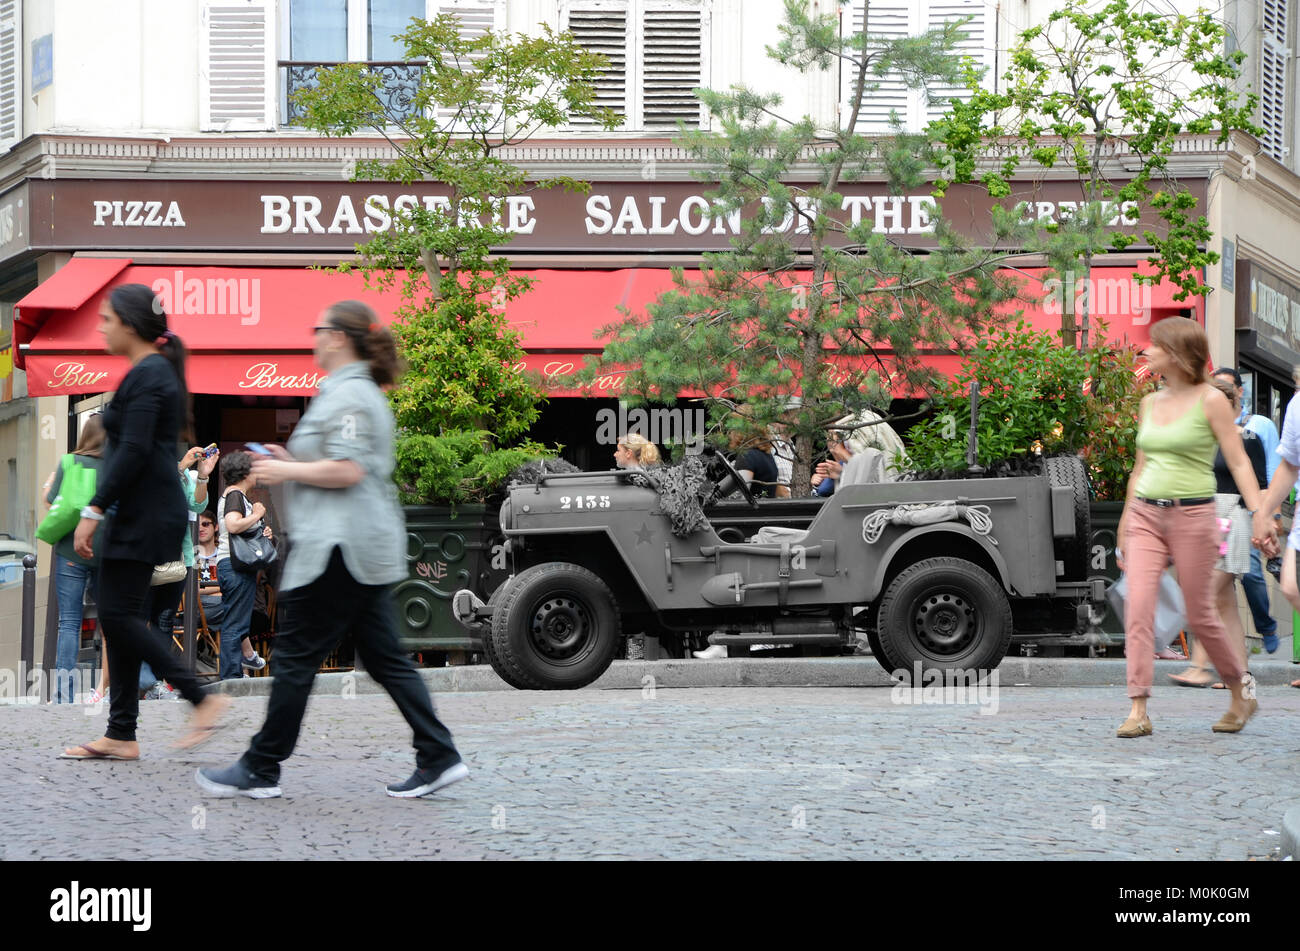 Jeep americana in tempo di guerra a Parigi, fuori dalla brasserie Salons de thé nel quartiere Montmartre di Parigi, Francia con jeep in monocromia. Concetto di deformazione temporale Foto Stock